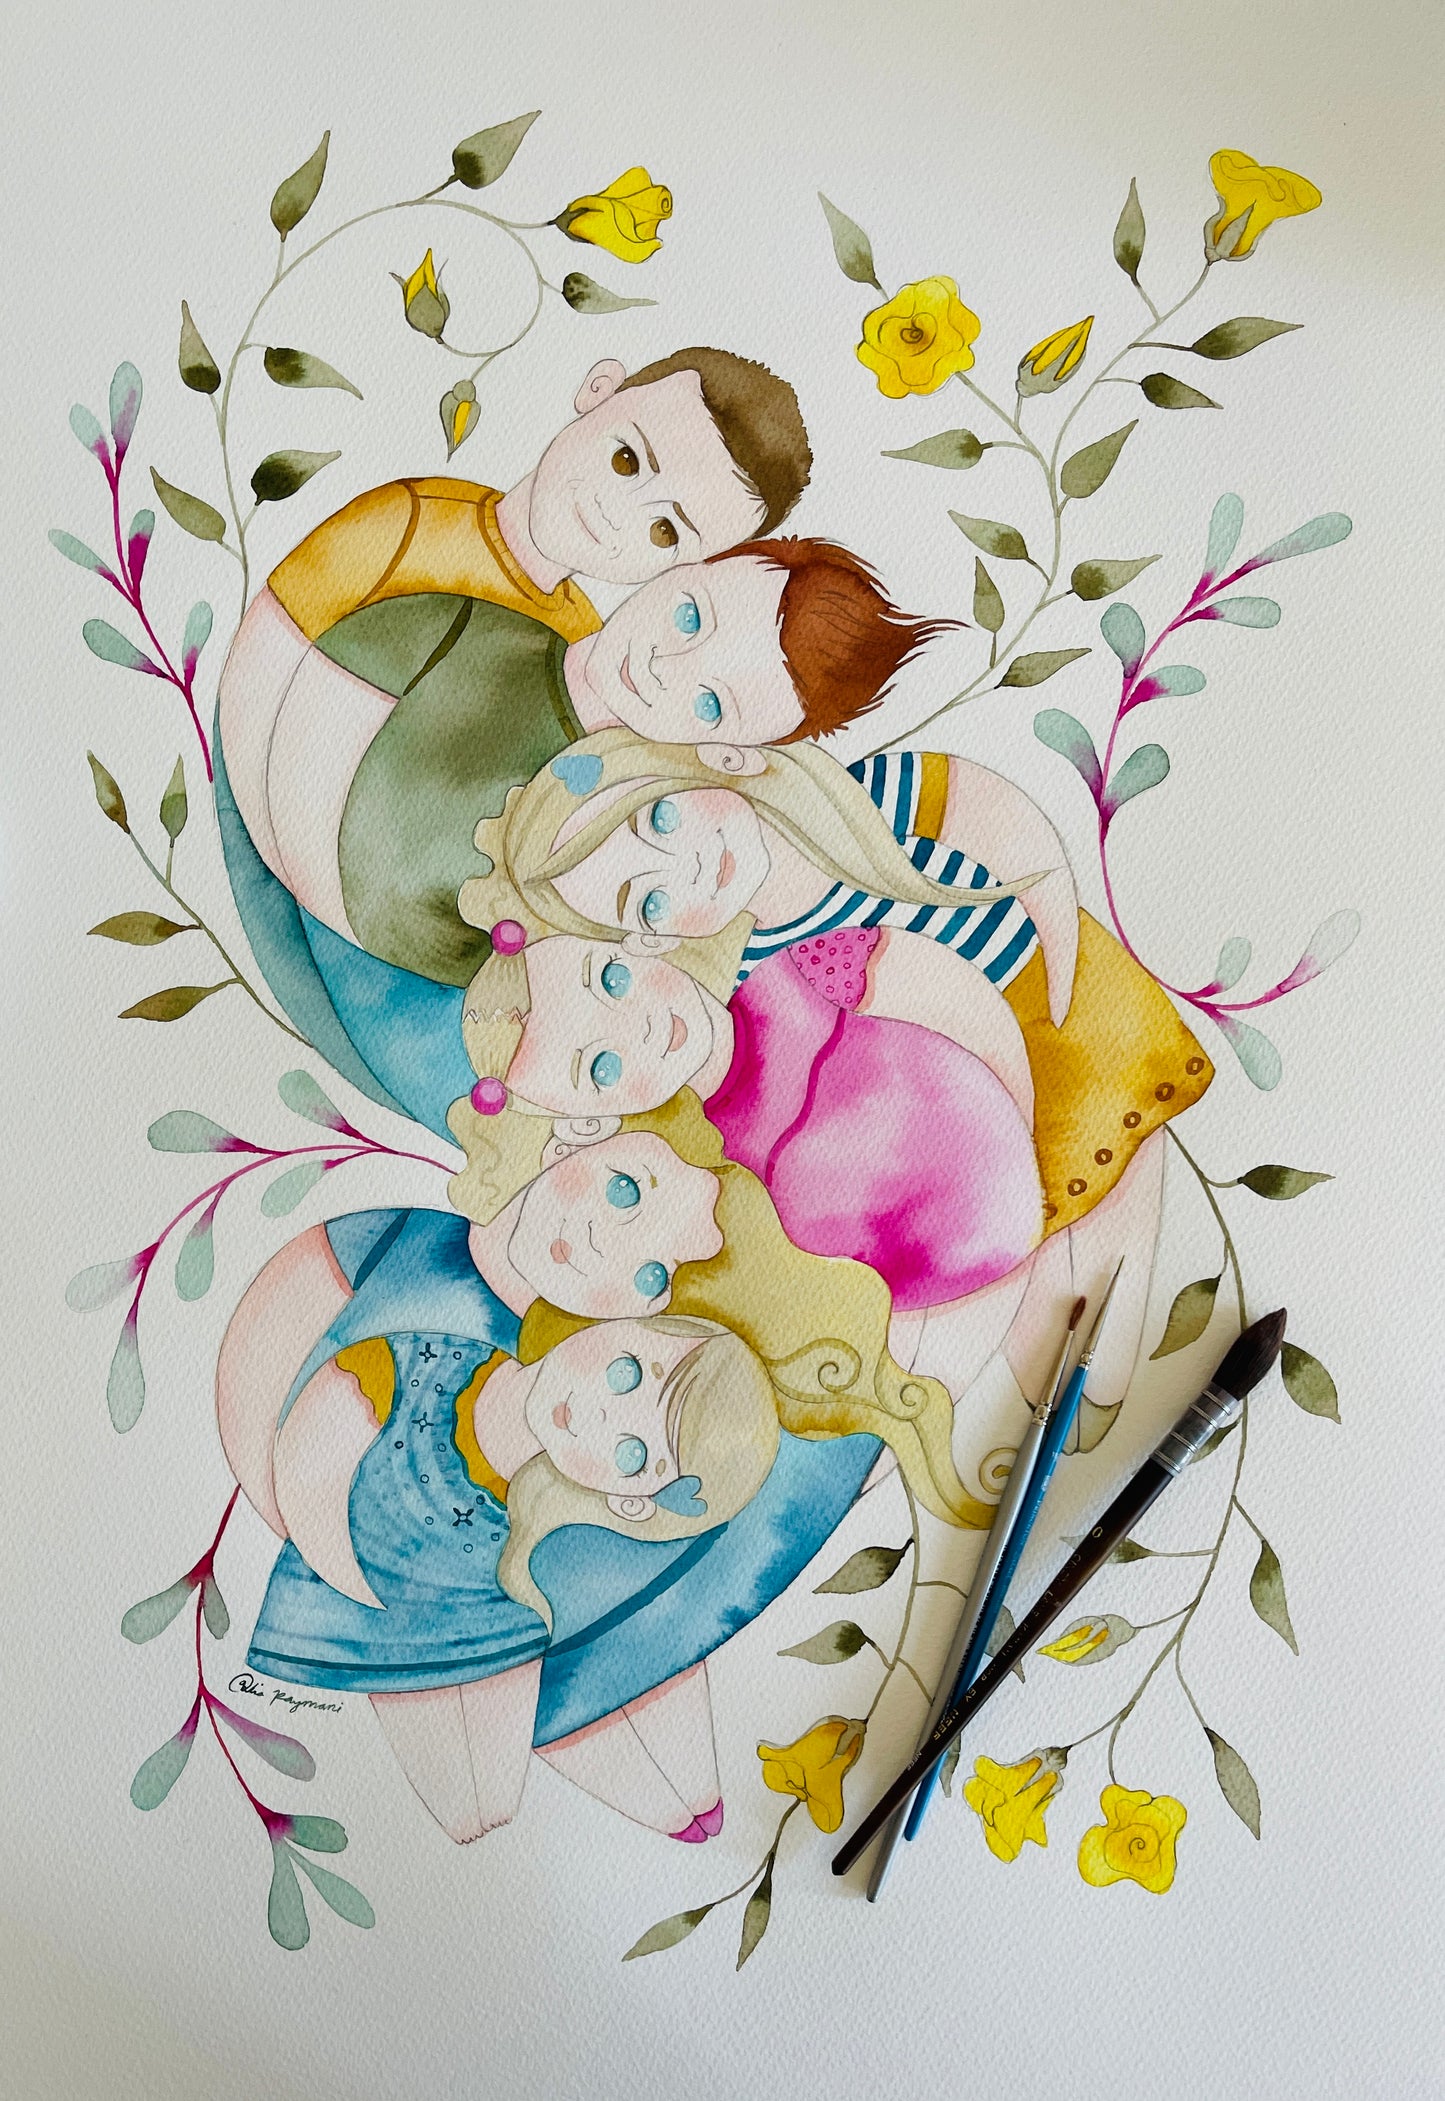 Family portrait watercolour illustration